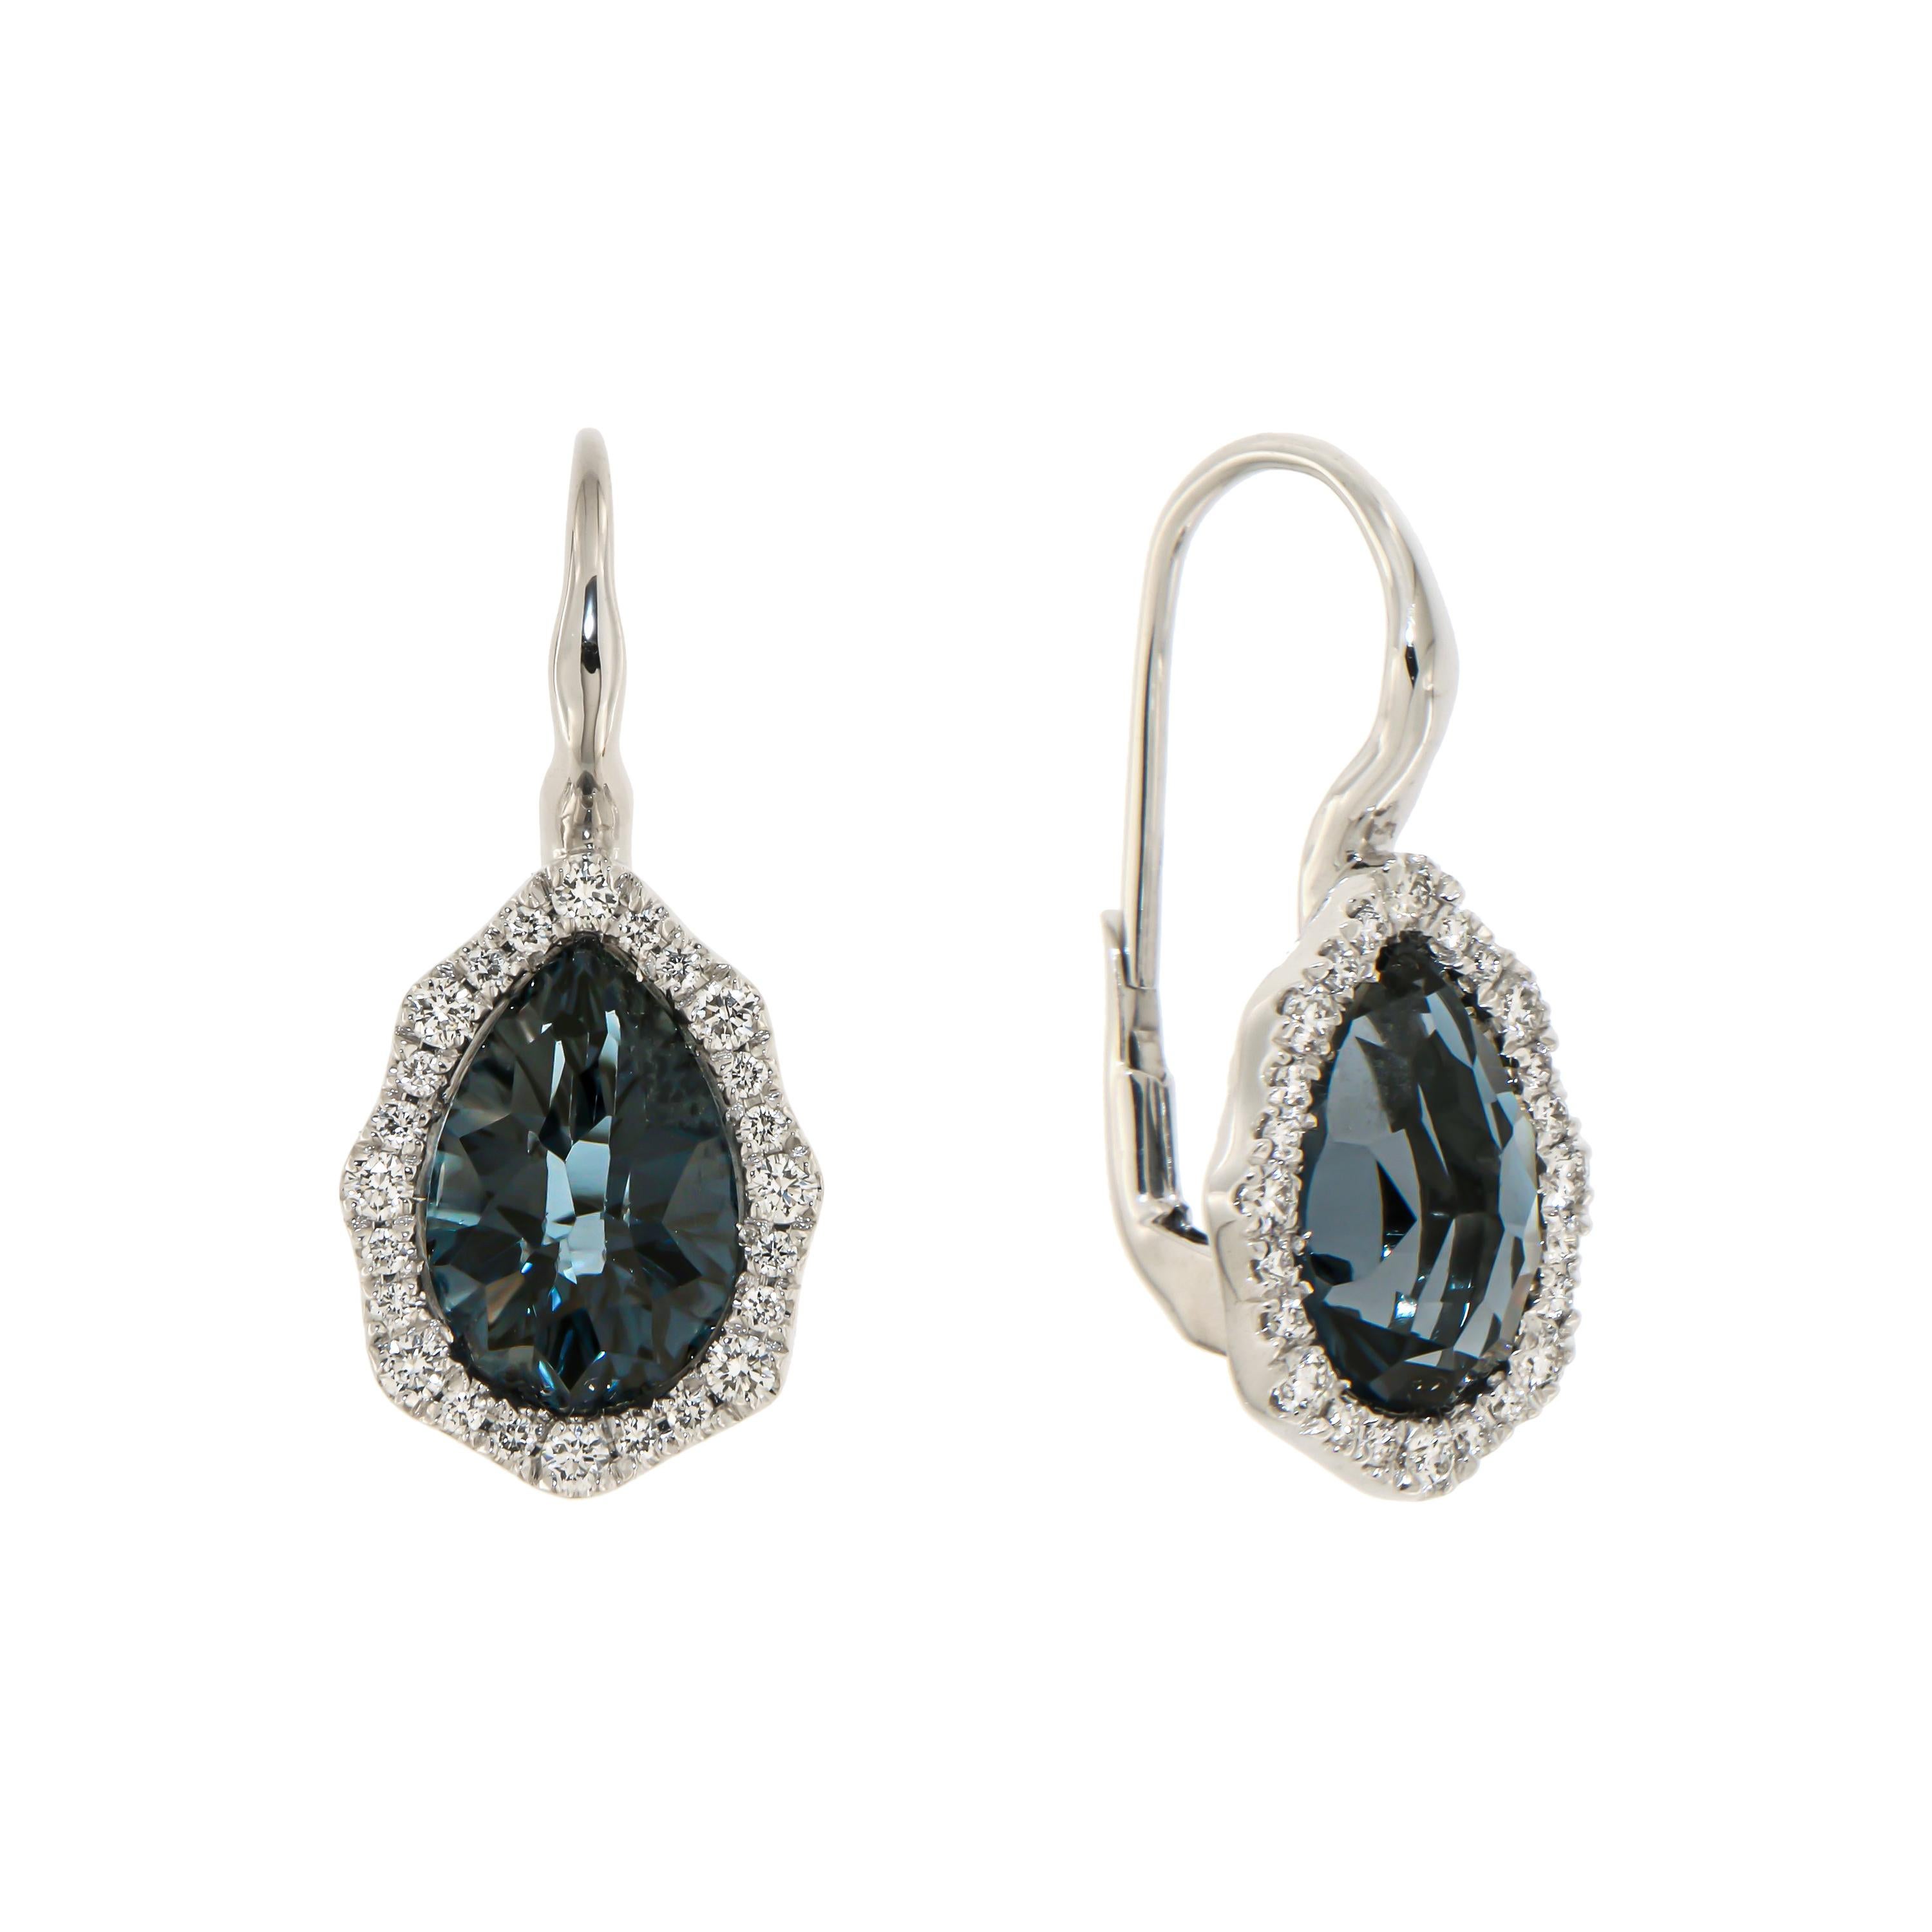 Italian Modern 18k London Blue Topaz Diamonds White Gold Earrings for Her